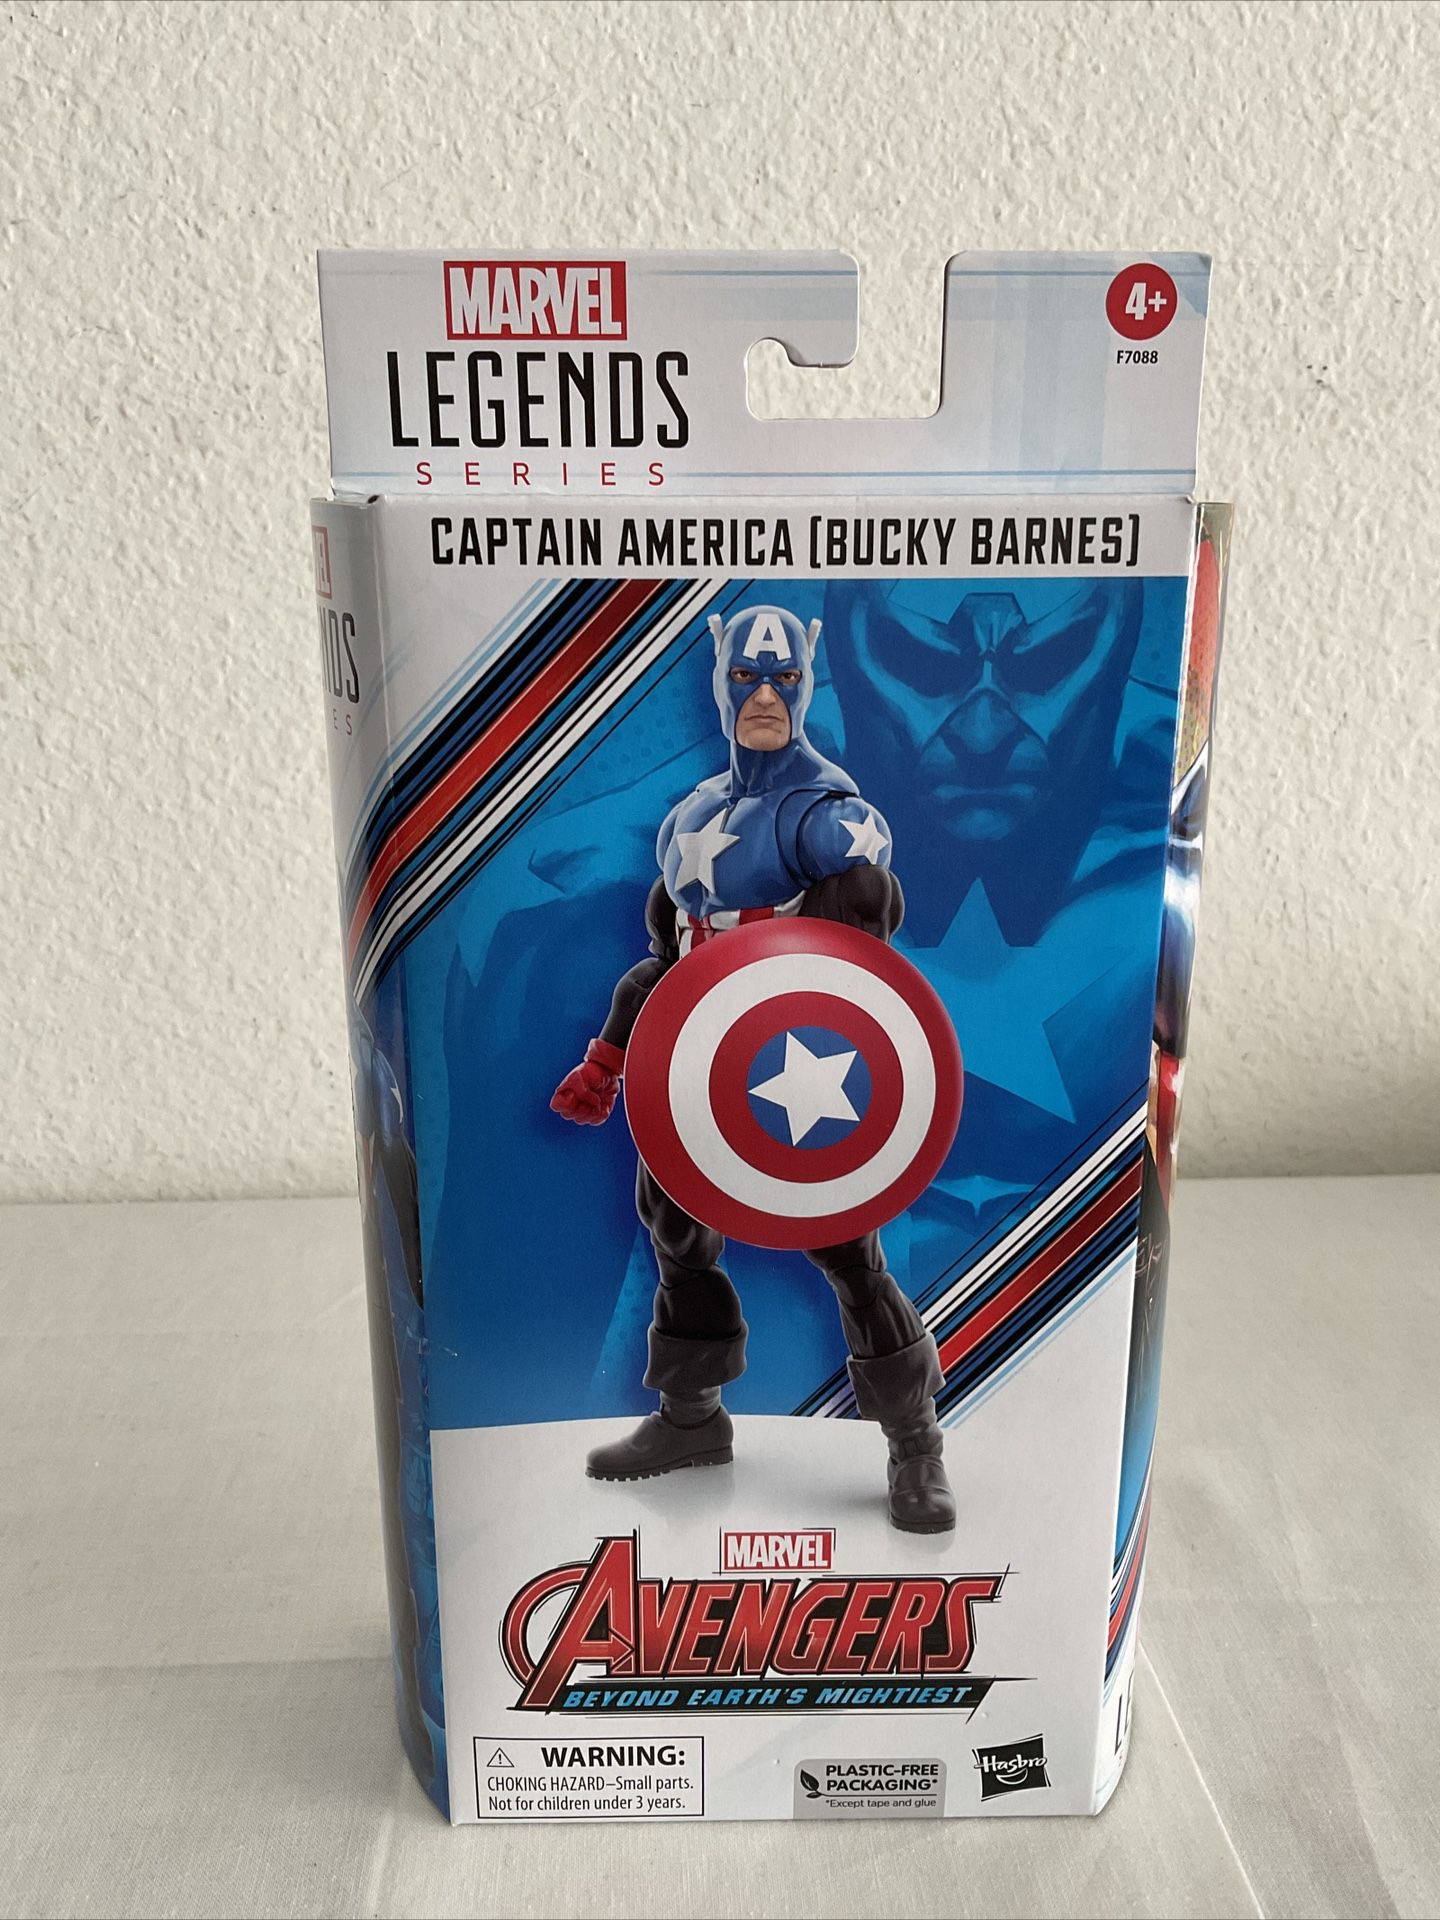 Marvel Legends Captain America Bucky Barnes 6” Figure Walmart Exclusive In Hand